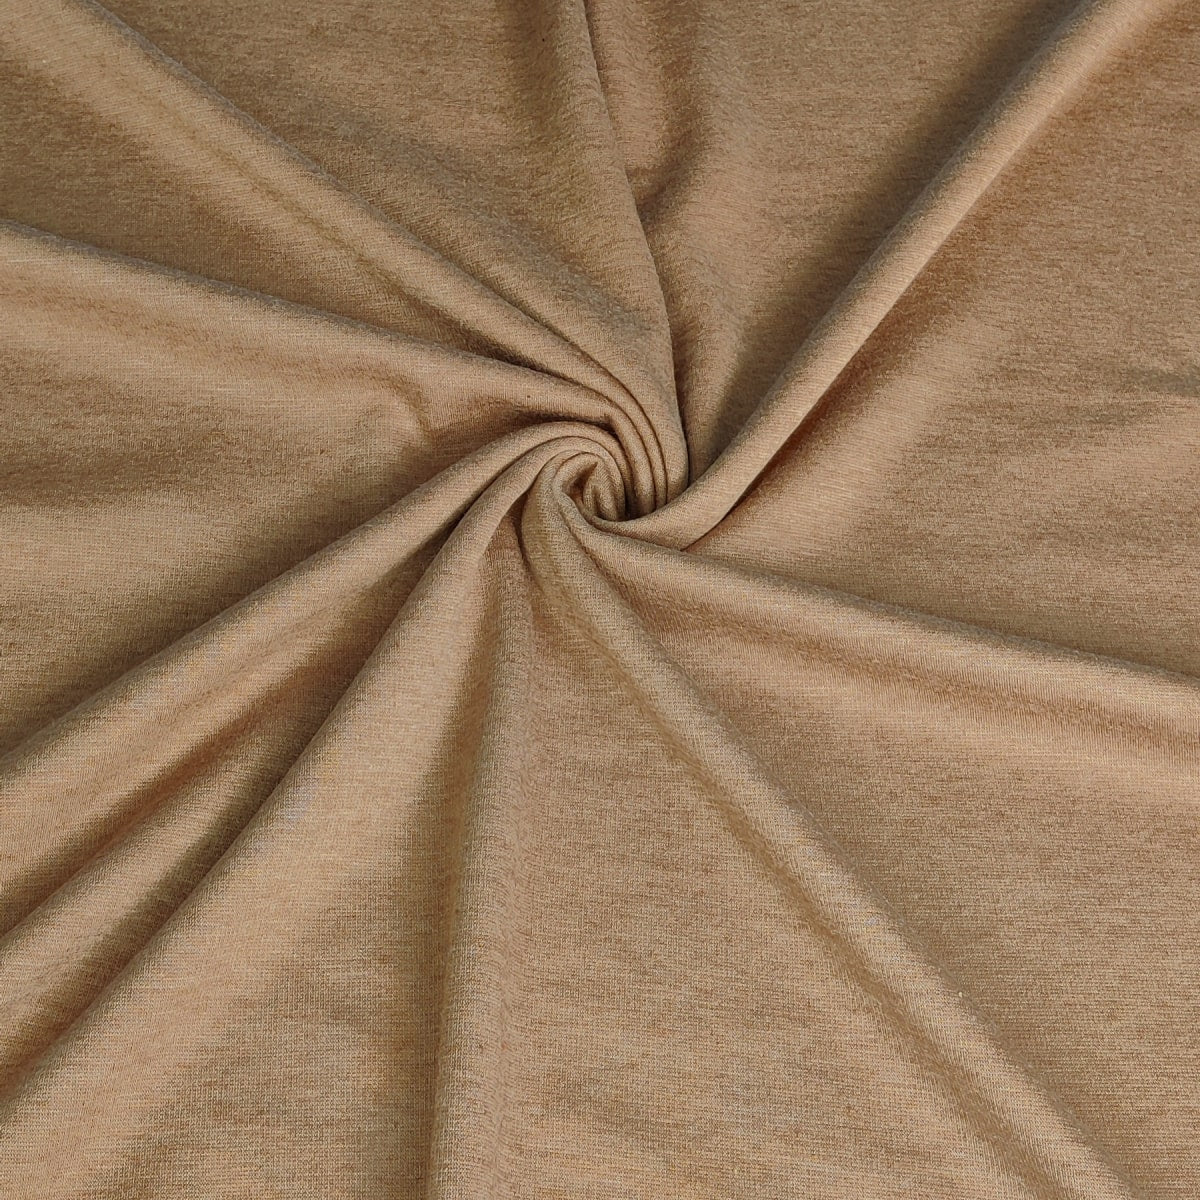 Stretch Sweatshirt Fabric | The Super Fluffy | Caramel | 82 cm | END OF ROLL